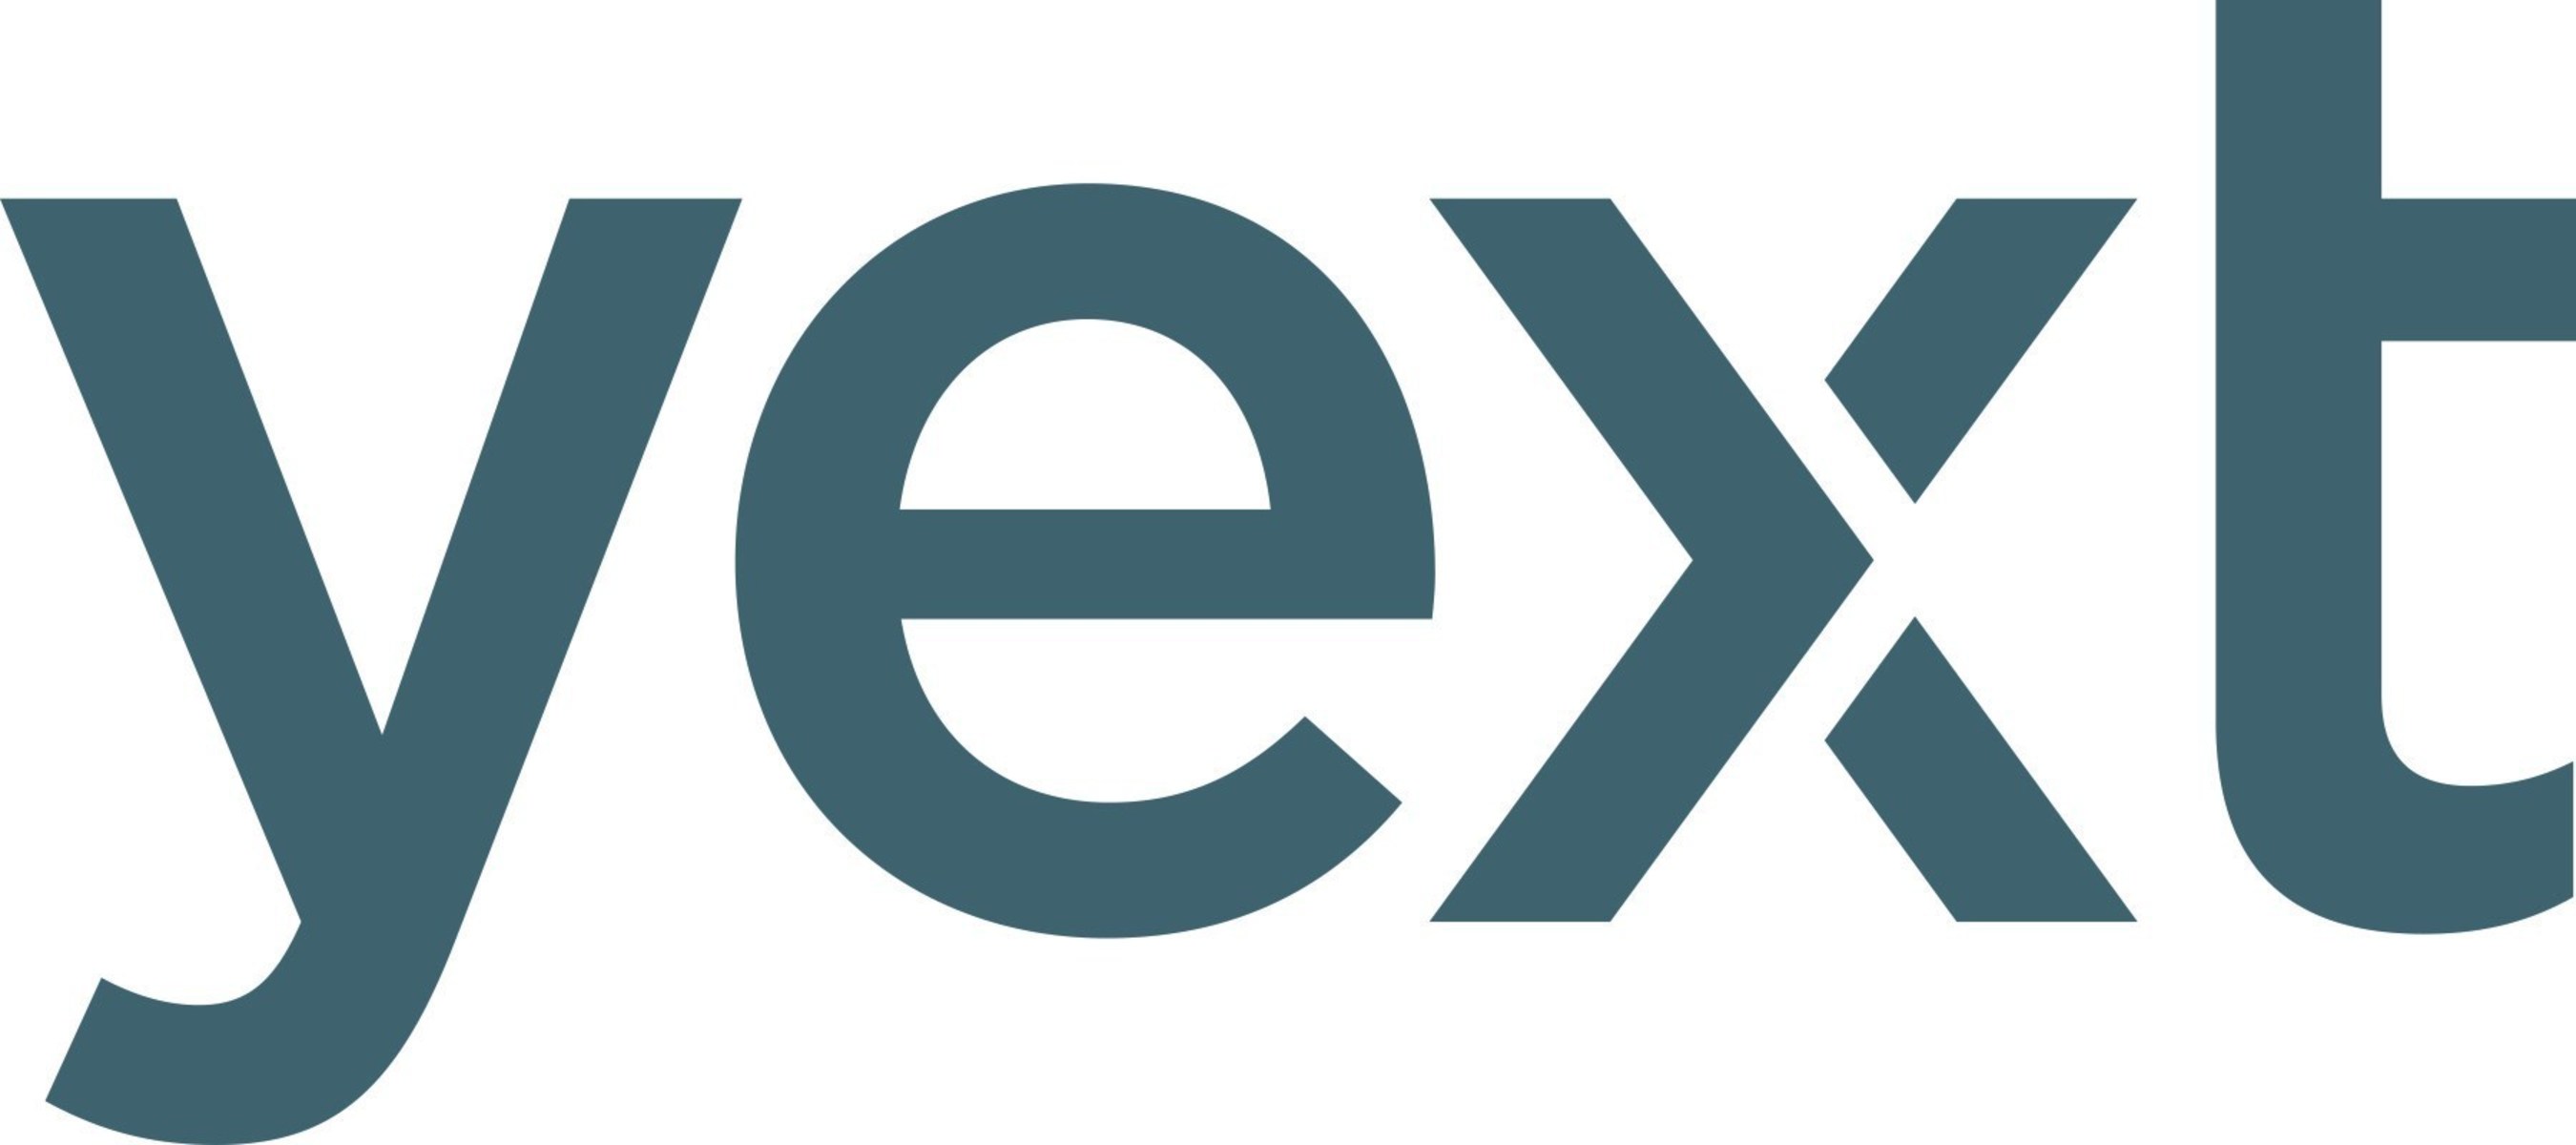 yext logos